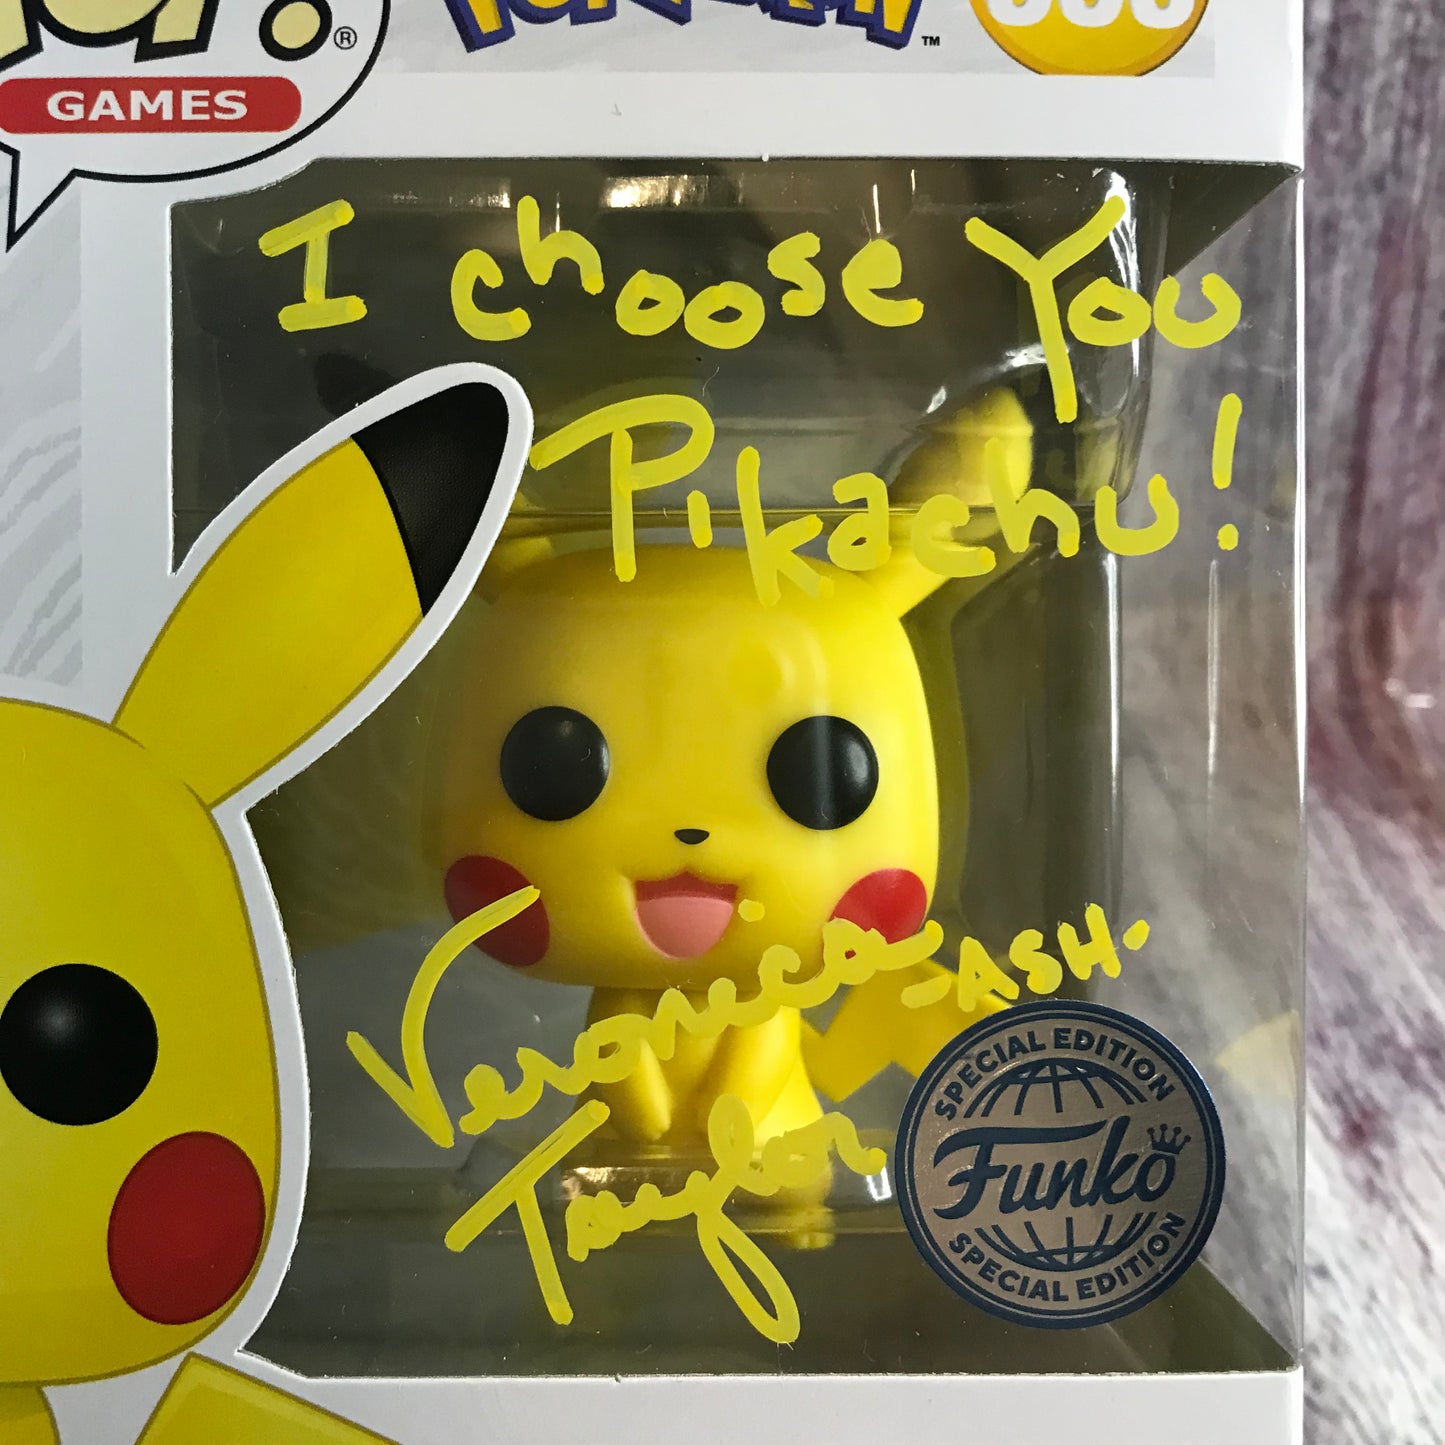 353 Signed Pokémon, Pikachu